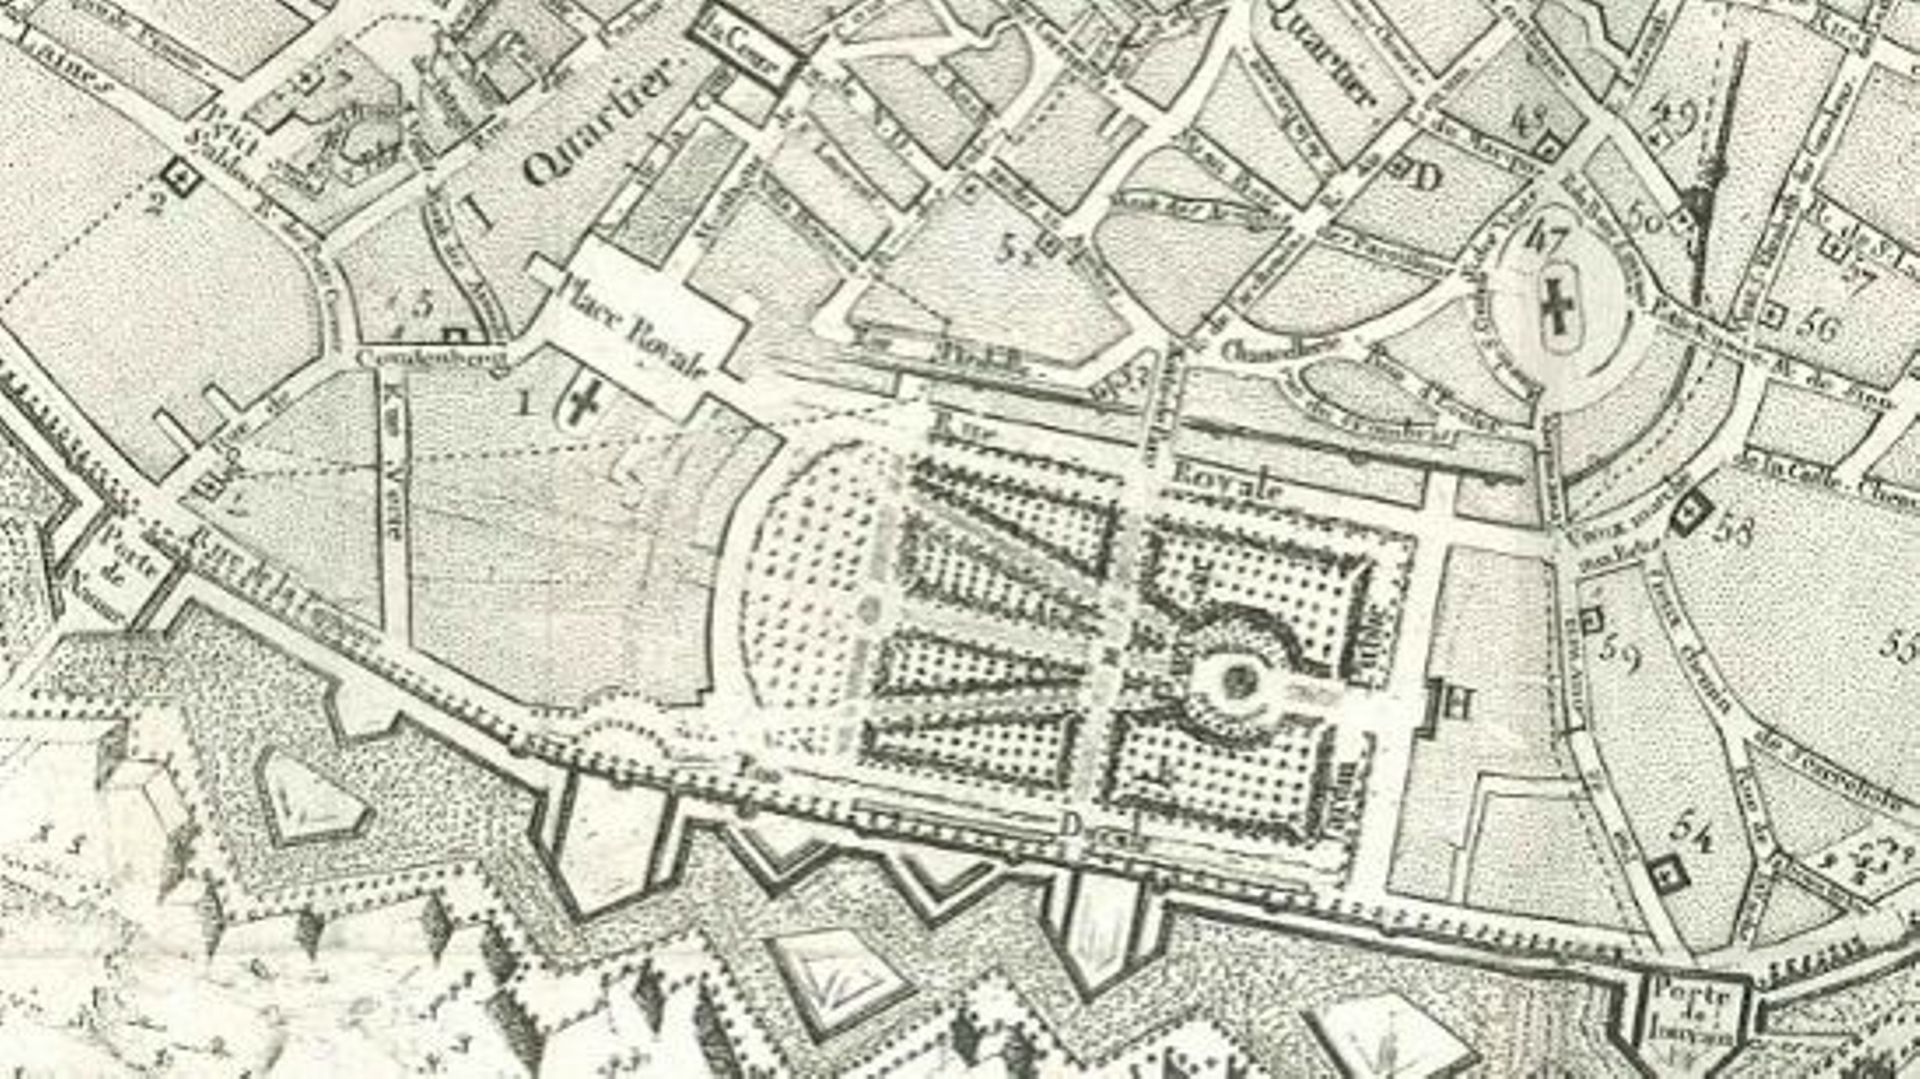 Extrait de " Description de la ville de Bruxelles enrichie de plan de la ville et de perspectives " – George Fricx, 1782. Académie Royale de Belgique.